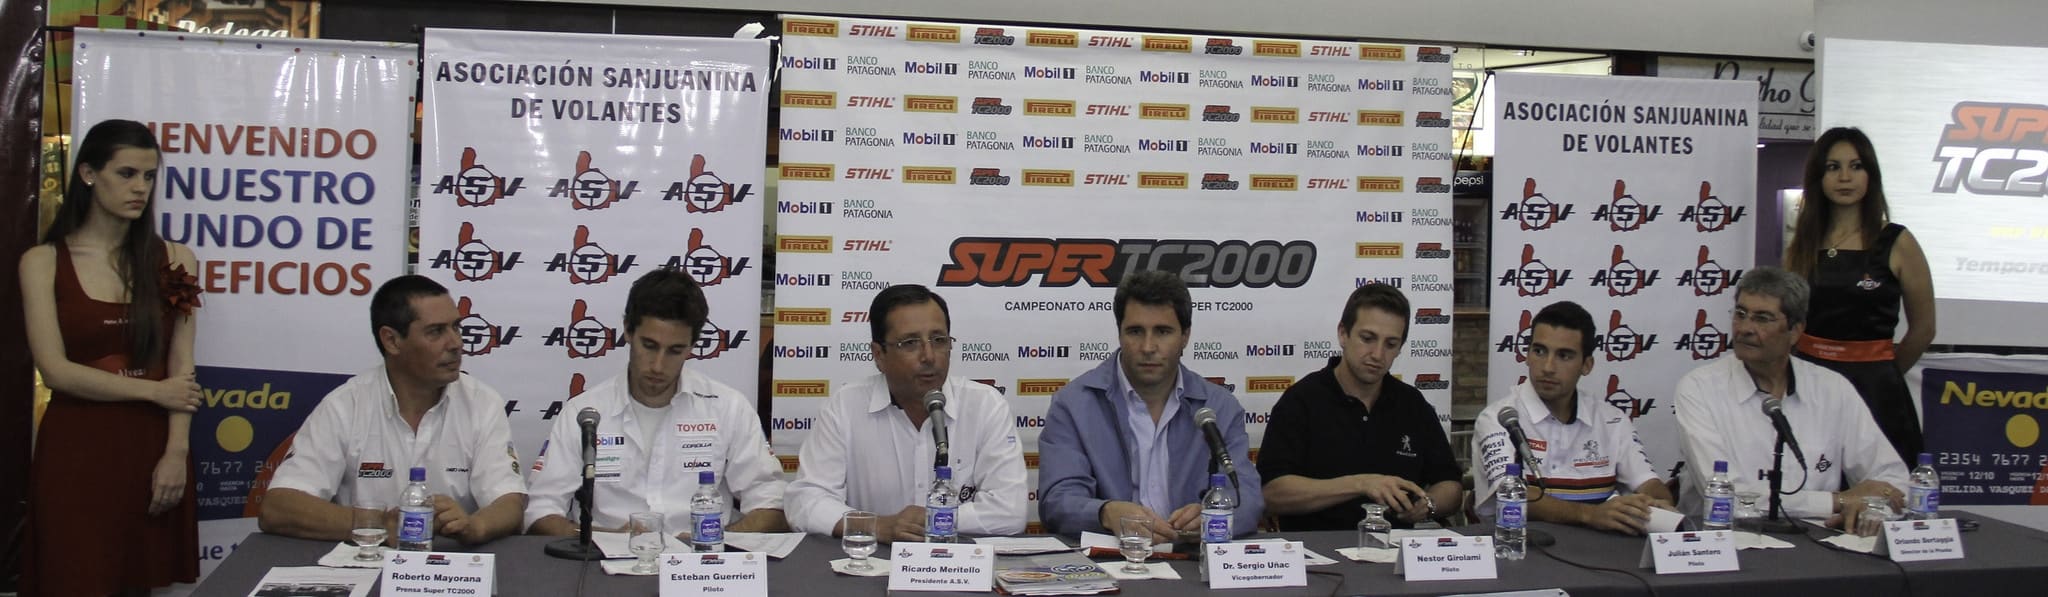 Conferencia de prensa de Super TC 2000